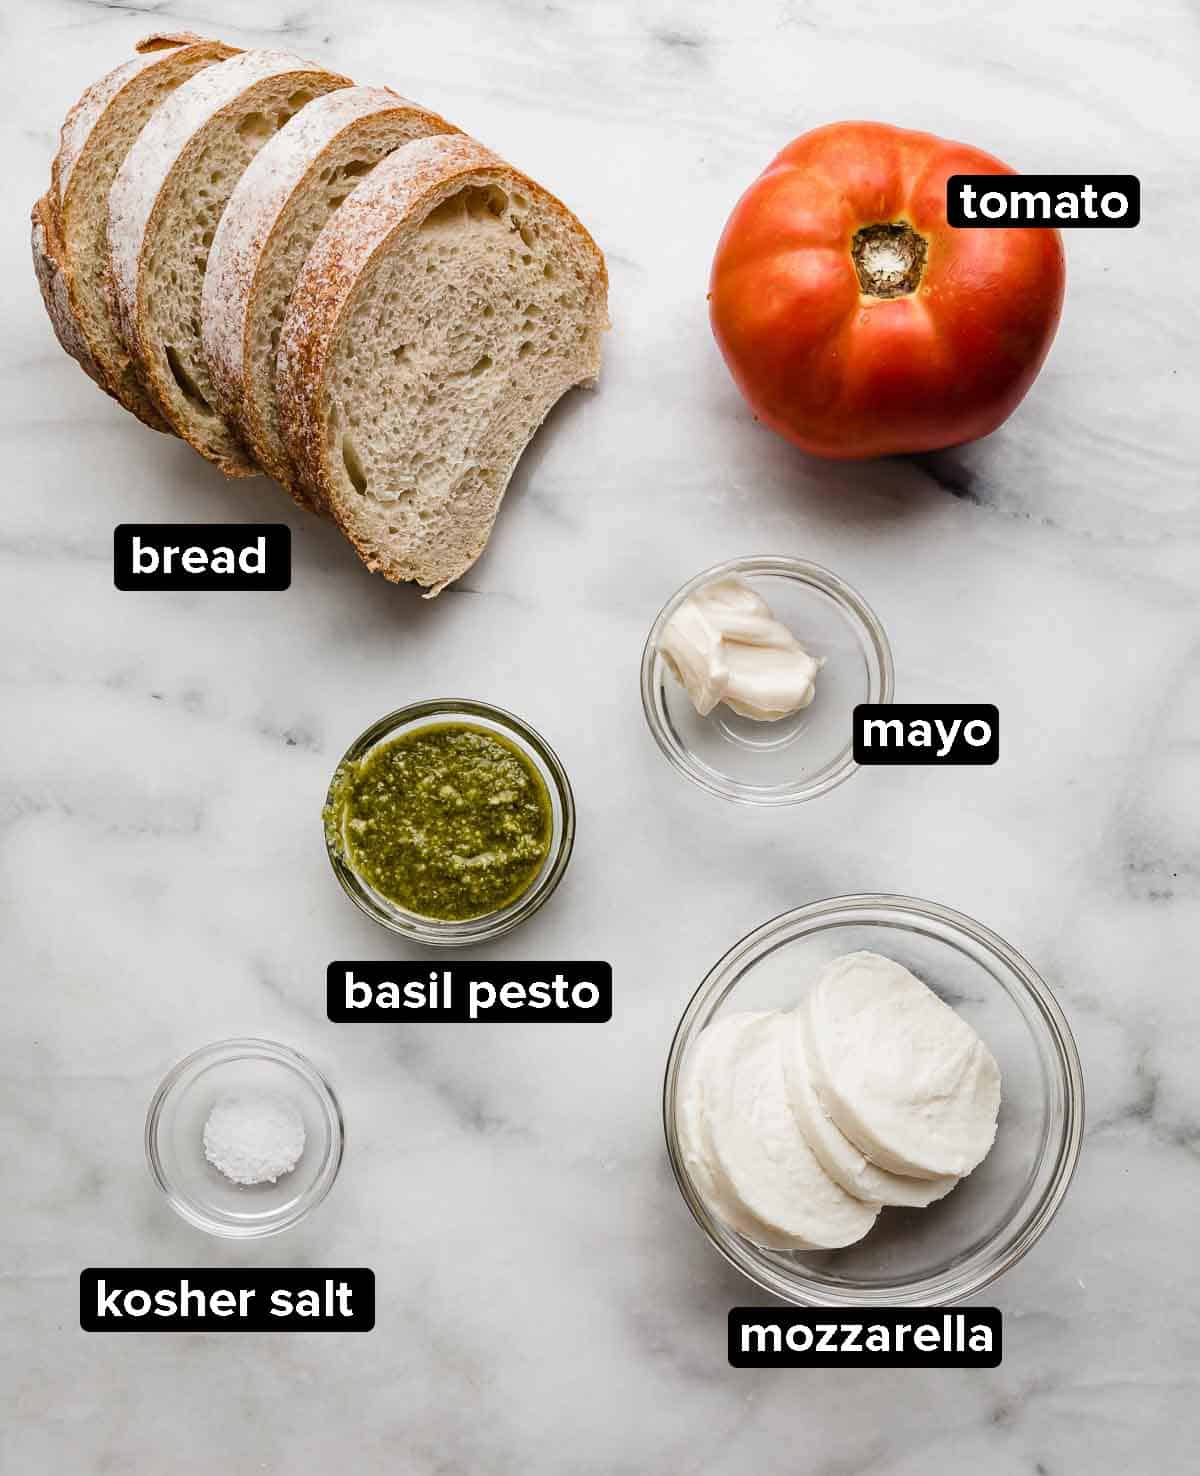 Pesto panini ingredients on a marble background, French bread, basil pesto, tomato, mayo, mozzarella, and salt.